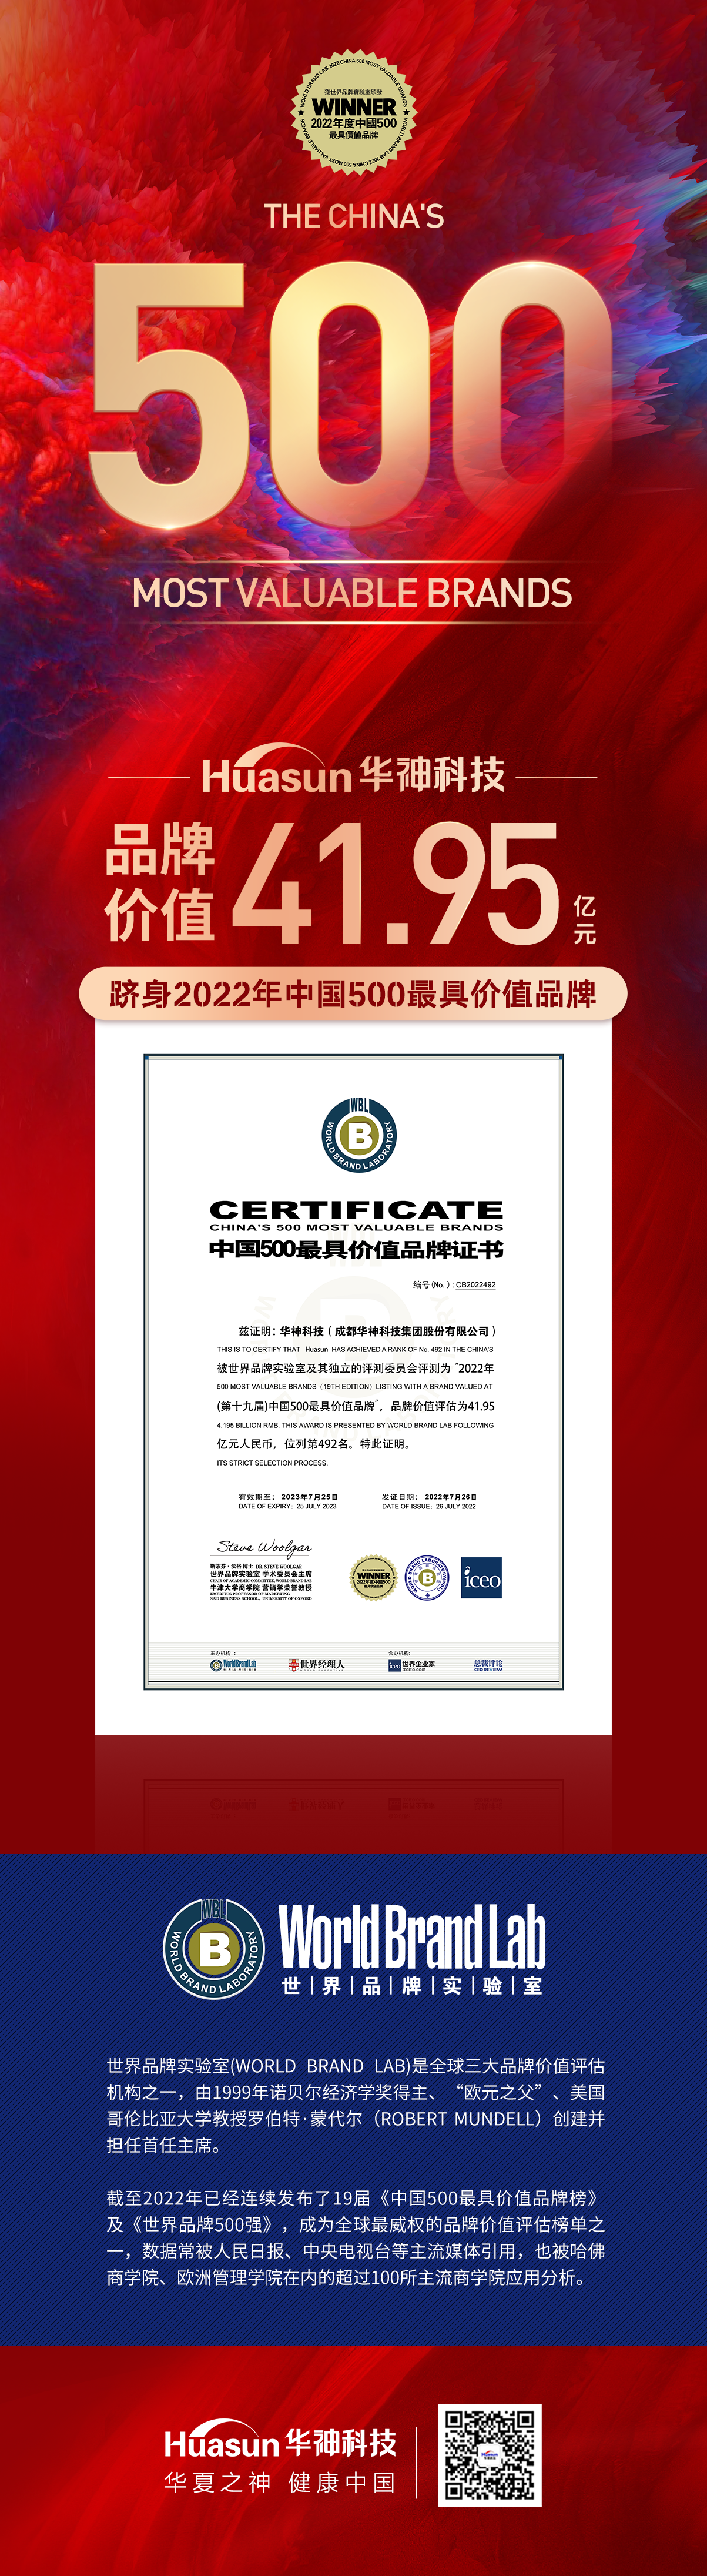 新普京澳门娱乐场首次荣膺中国500最具价值品牌 品牌价值达41.95亿